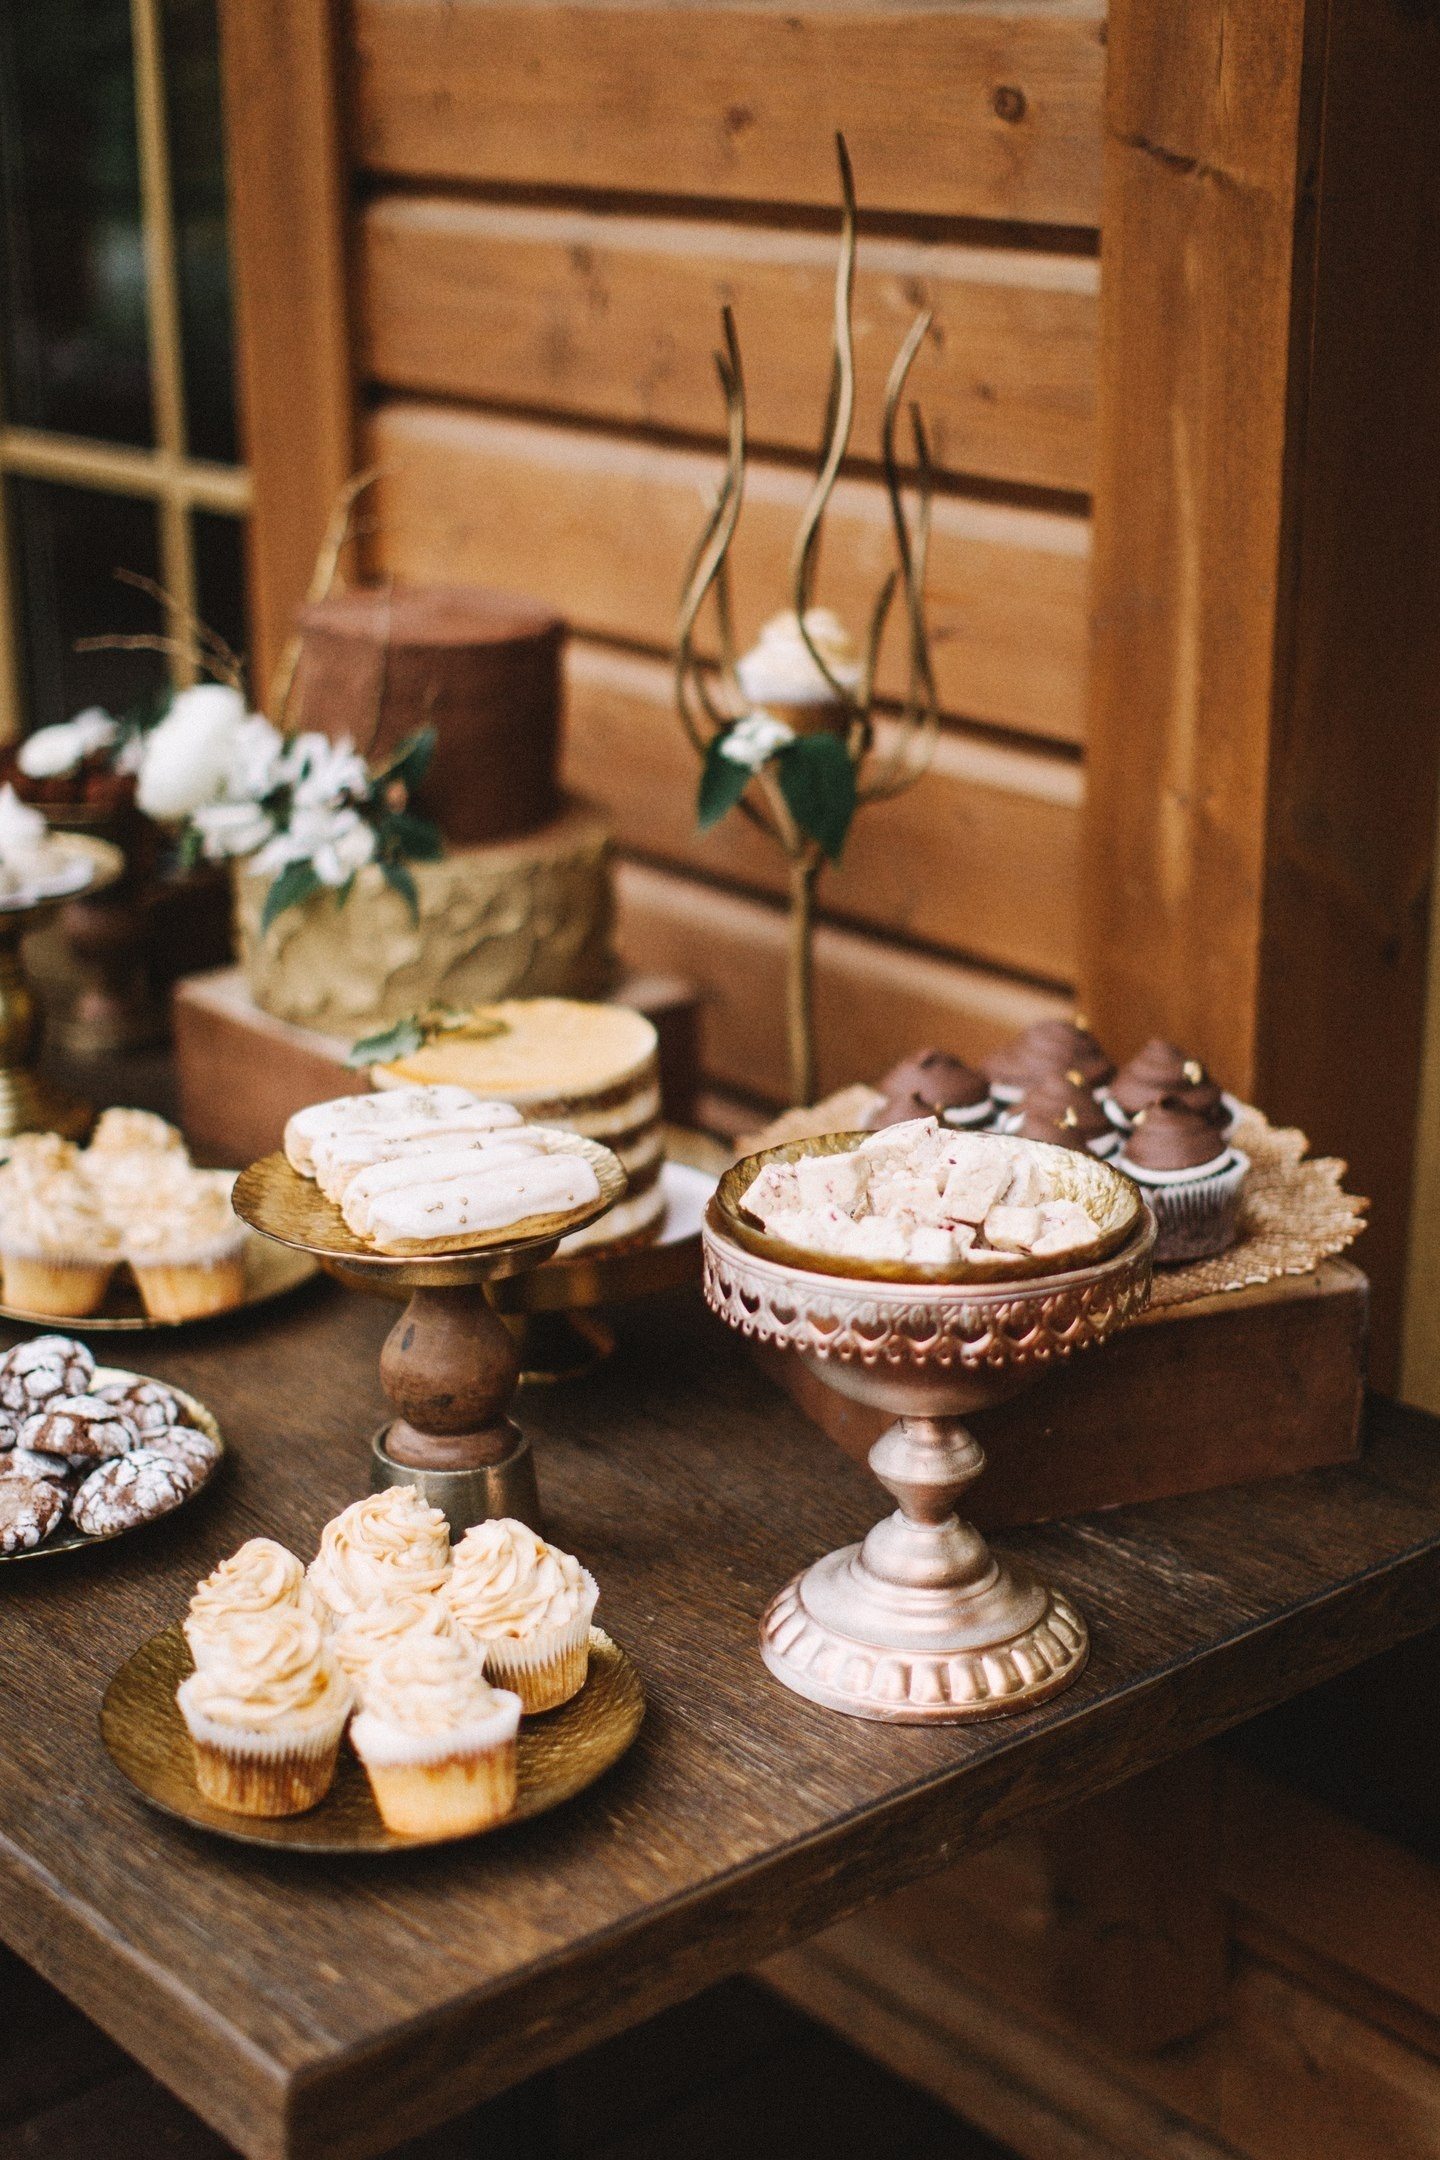 Gebrochene Schokoriegel, Trüffel, luftige Mokka-Desserts, dekoriert mit Kaffeebohnen und durchbrochenen Keksen mit Zuckerguss im Hochzeitsstil sehen in Gesellschaft von alten Kisten und kunstvollen Ständen großartig aus